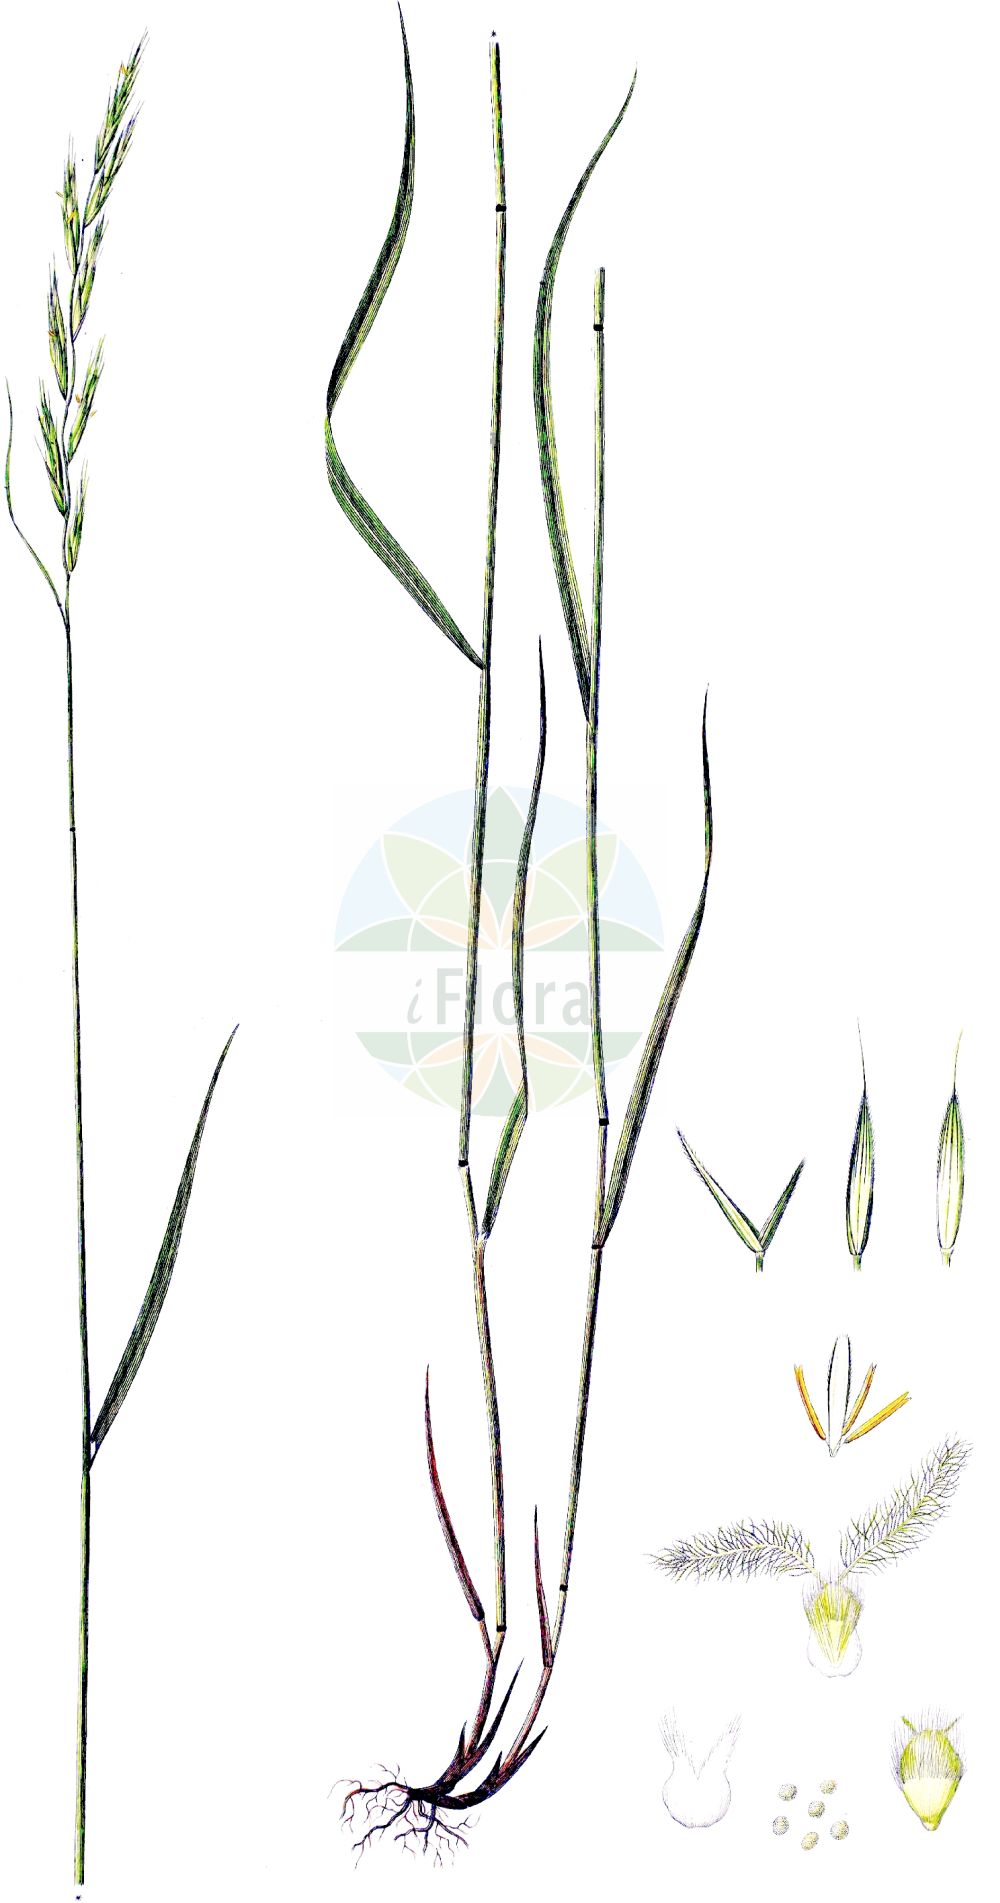 Historische Abbildung von Brachypodium pinnatum (Fieder-Zwenke - Tor-grass). Das Bild zeigt Blatt, Bluete, Frucht und Same. ---- Historical Drawing of Brachypodium pinnatum (Fieder-Zwenke - Tor-grass). The image is showing leaf, flower, fruit and seed.(Brachypodium pinnatum,Fieder-Zwenke,Tor-grass,Brachypodium pinnatum,Bromus pinnatus,Fieder-Zwenke,Tor-grass,Heath False-brome,Chalk False Brome,False Japanese Bromegrass,Brachypodium,Zwenke,False Brome,Poaceae,Süßgräser,Grass family,Blatt,Bluete,Frucht,Same,leaf,flower,fruit,seed,Oeder (1761-1883))